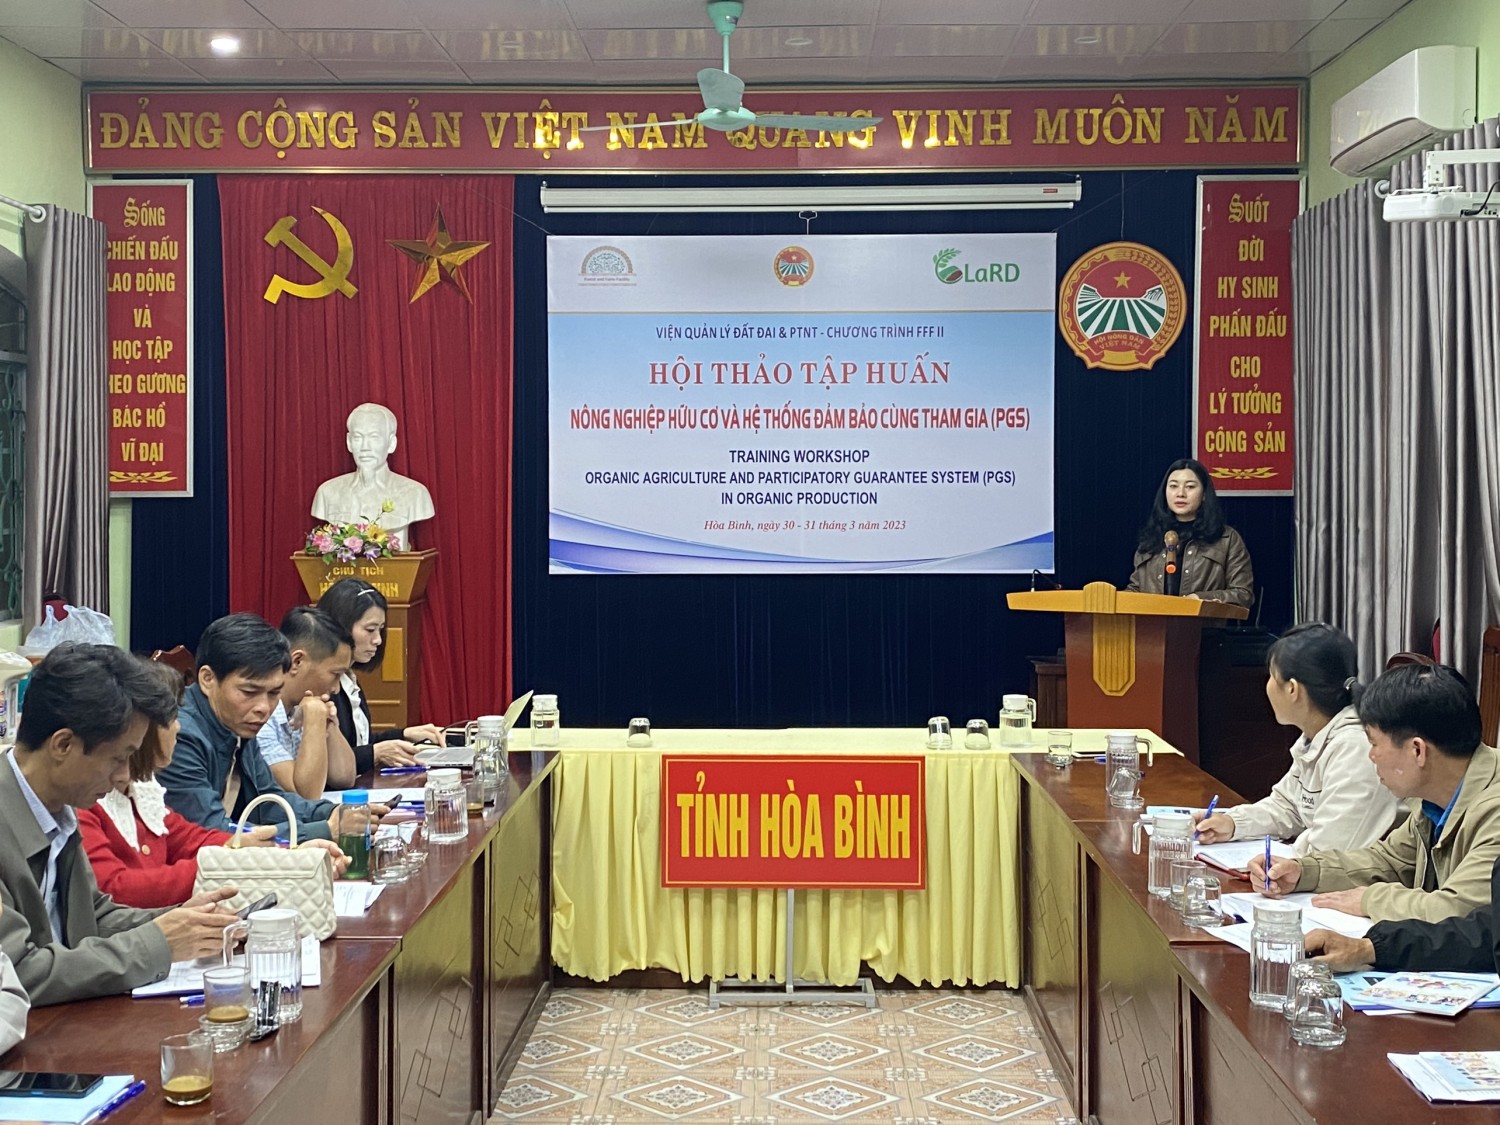 Bà Lê Thị Bích Huệ - Trưởng ban kinh tế, Hội nông dân tỉnh Hòa Bình, phát biểu khai mạc hội nghị